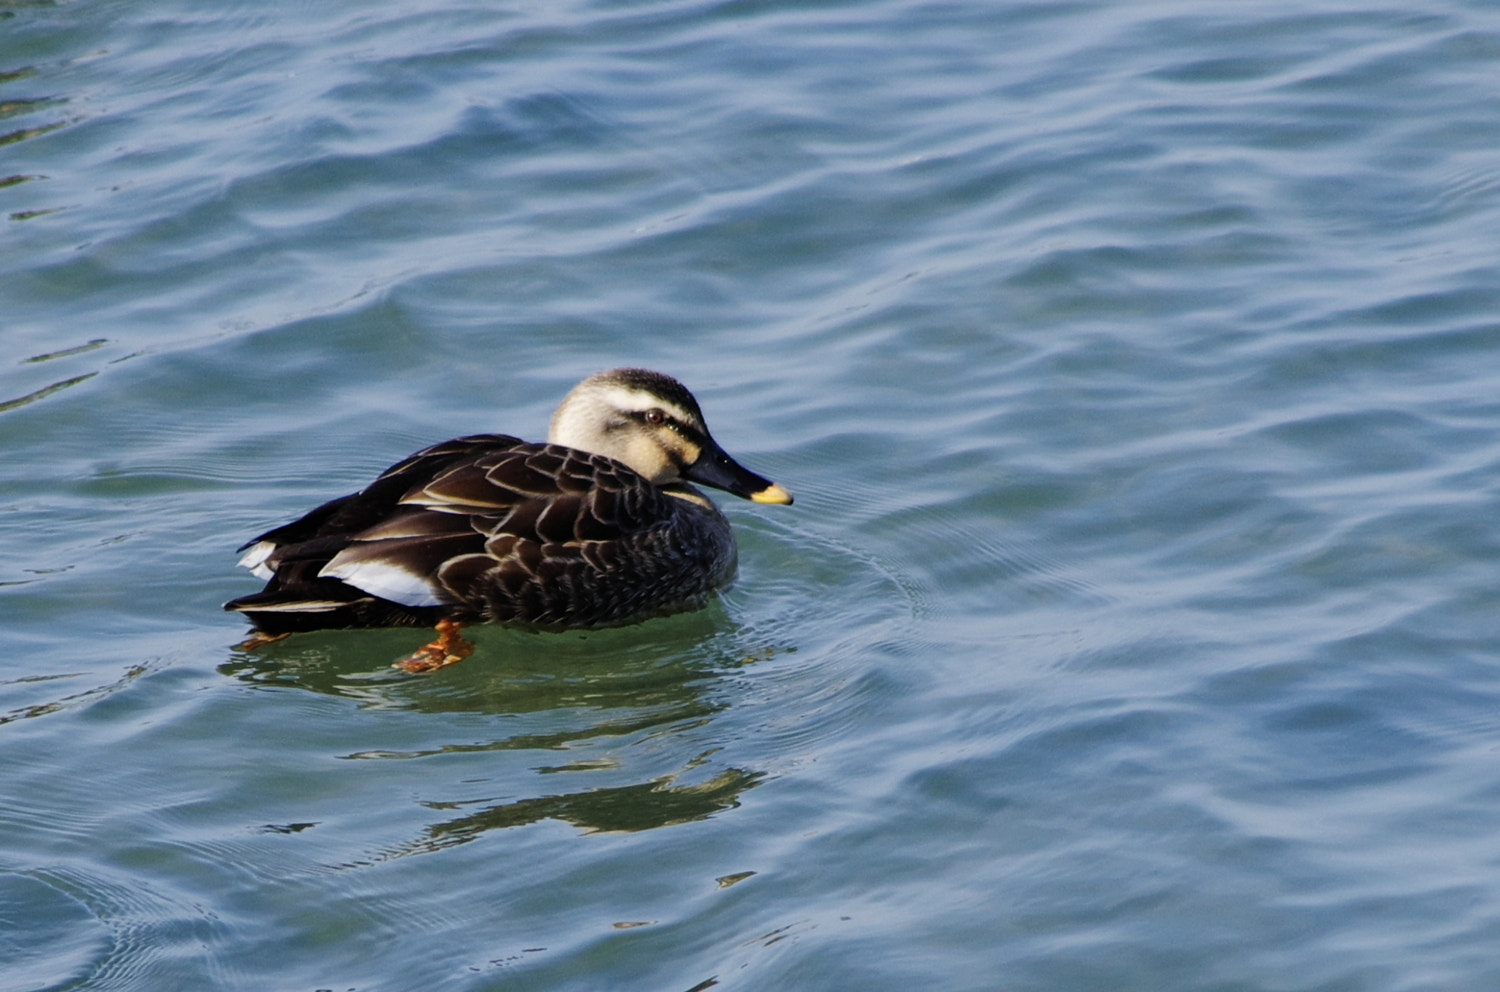 Pentax K-5 sample photo. Spot-billed duck photography